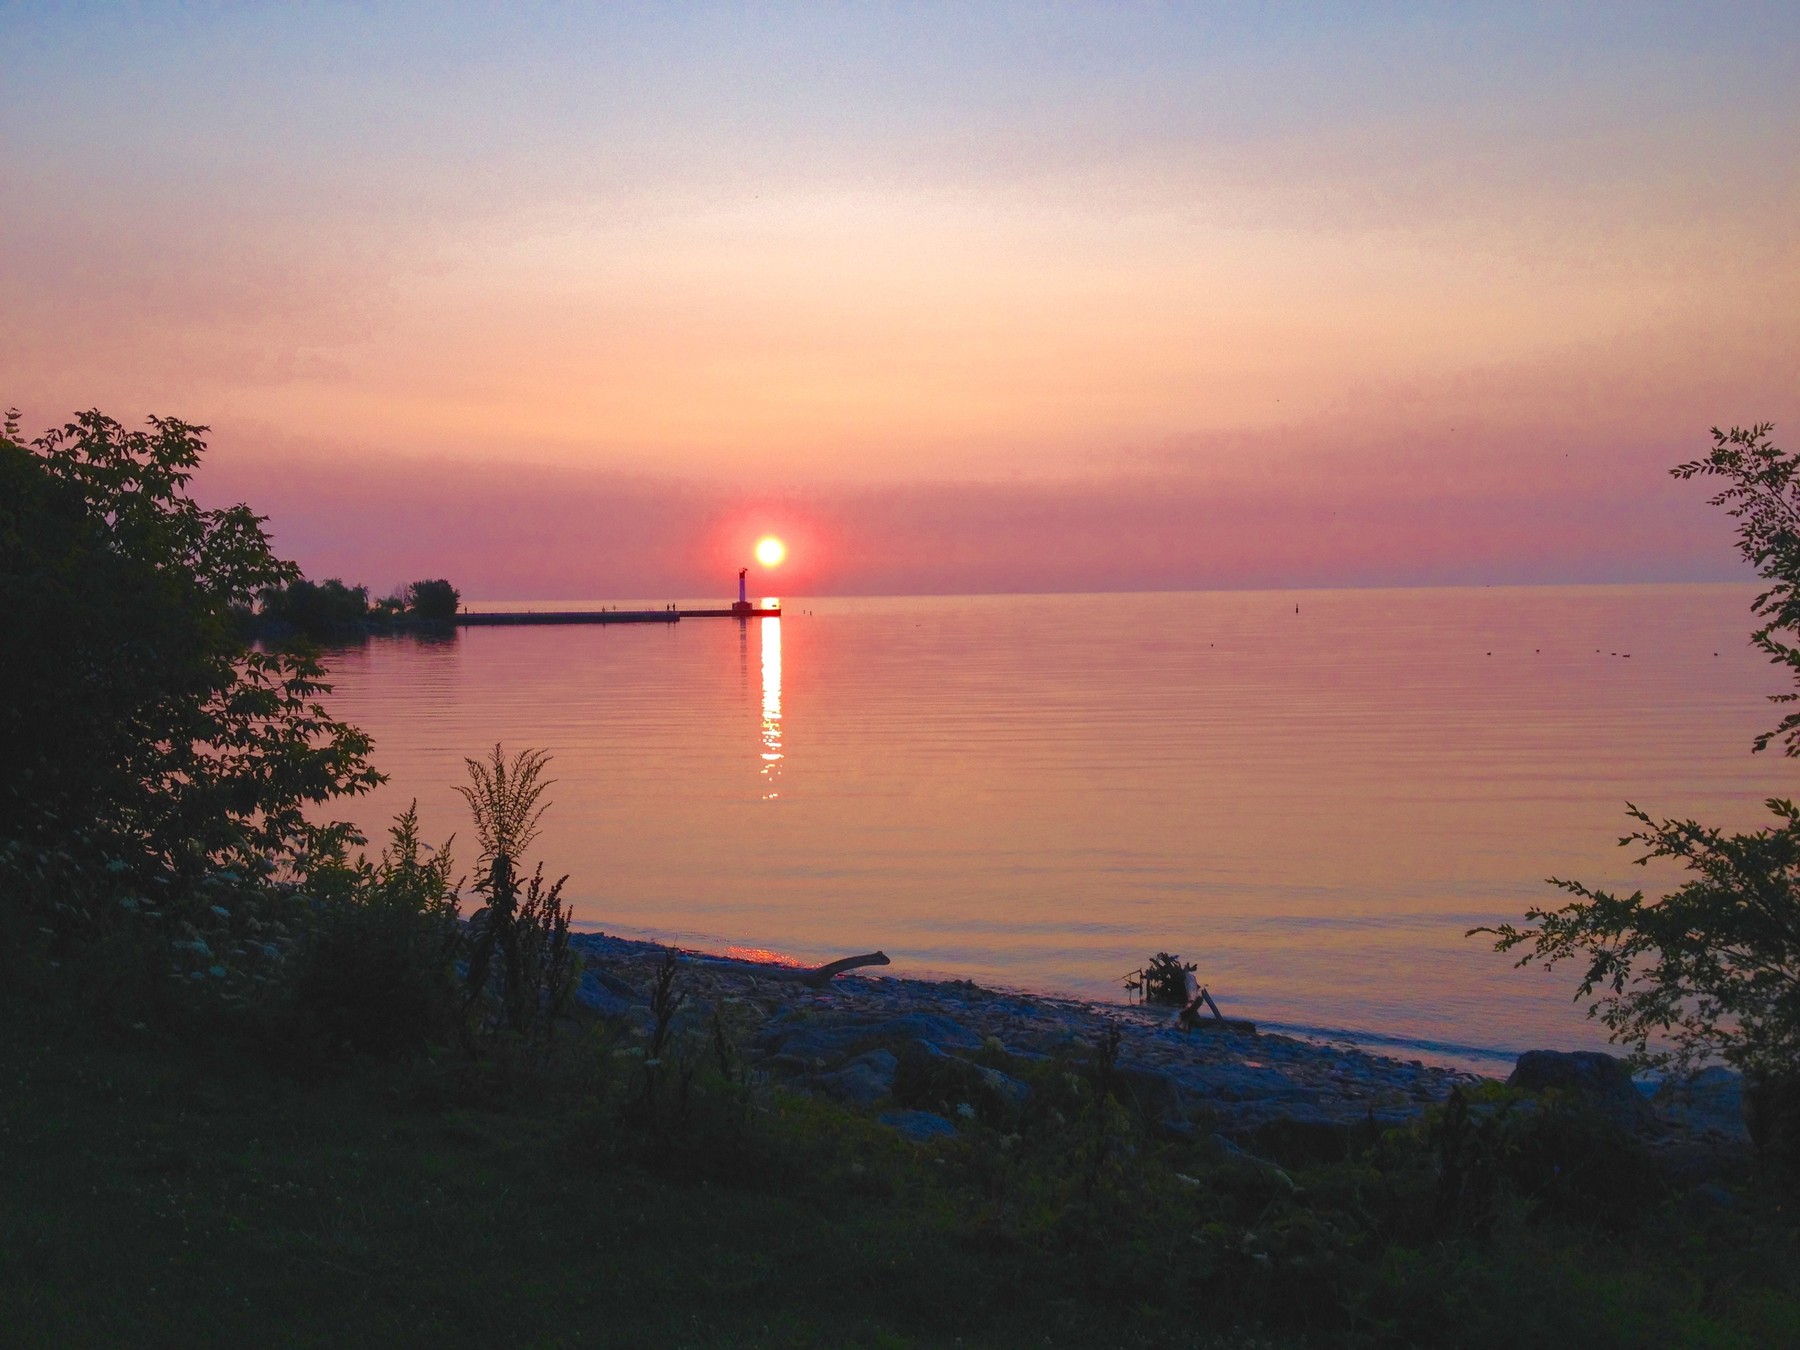 Sunrise over Lake Ontario by Oakville Pier | OakvilleNews.Org